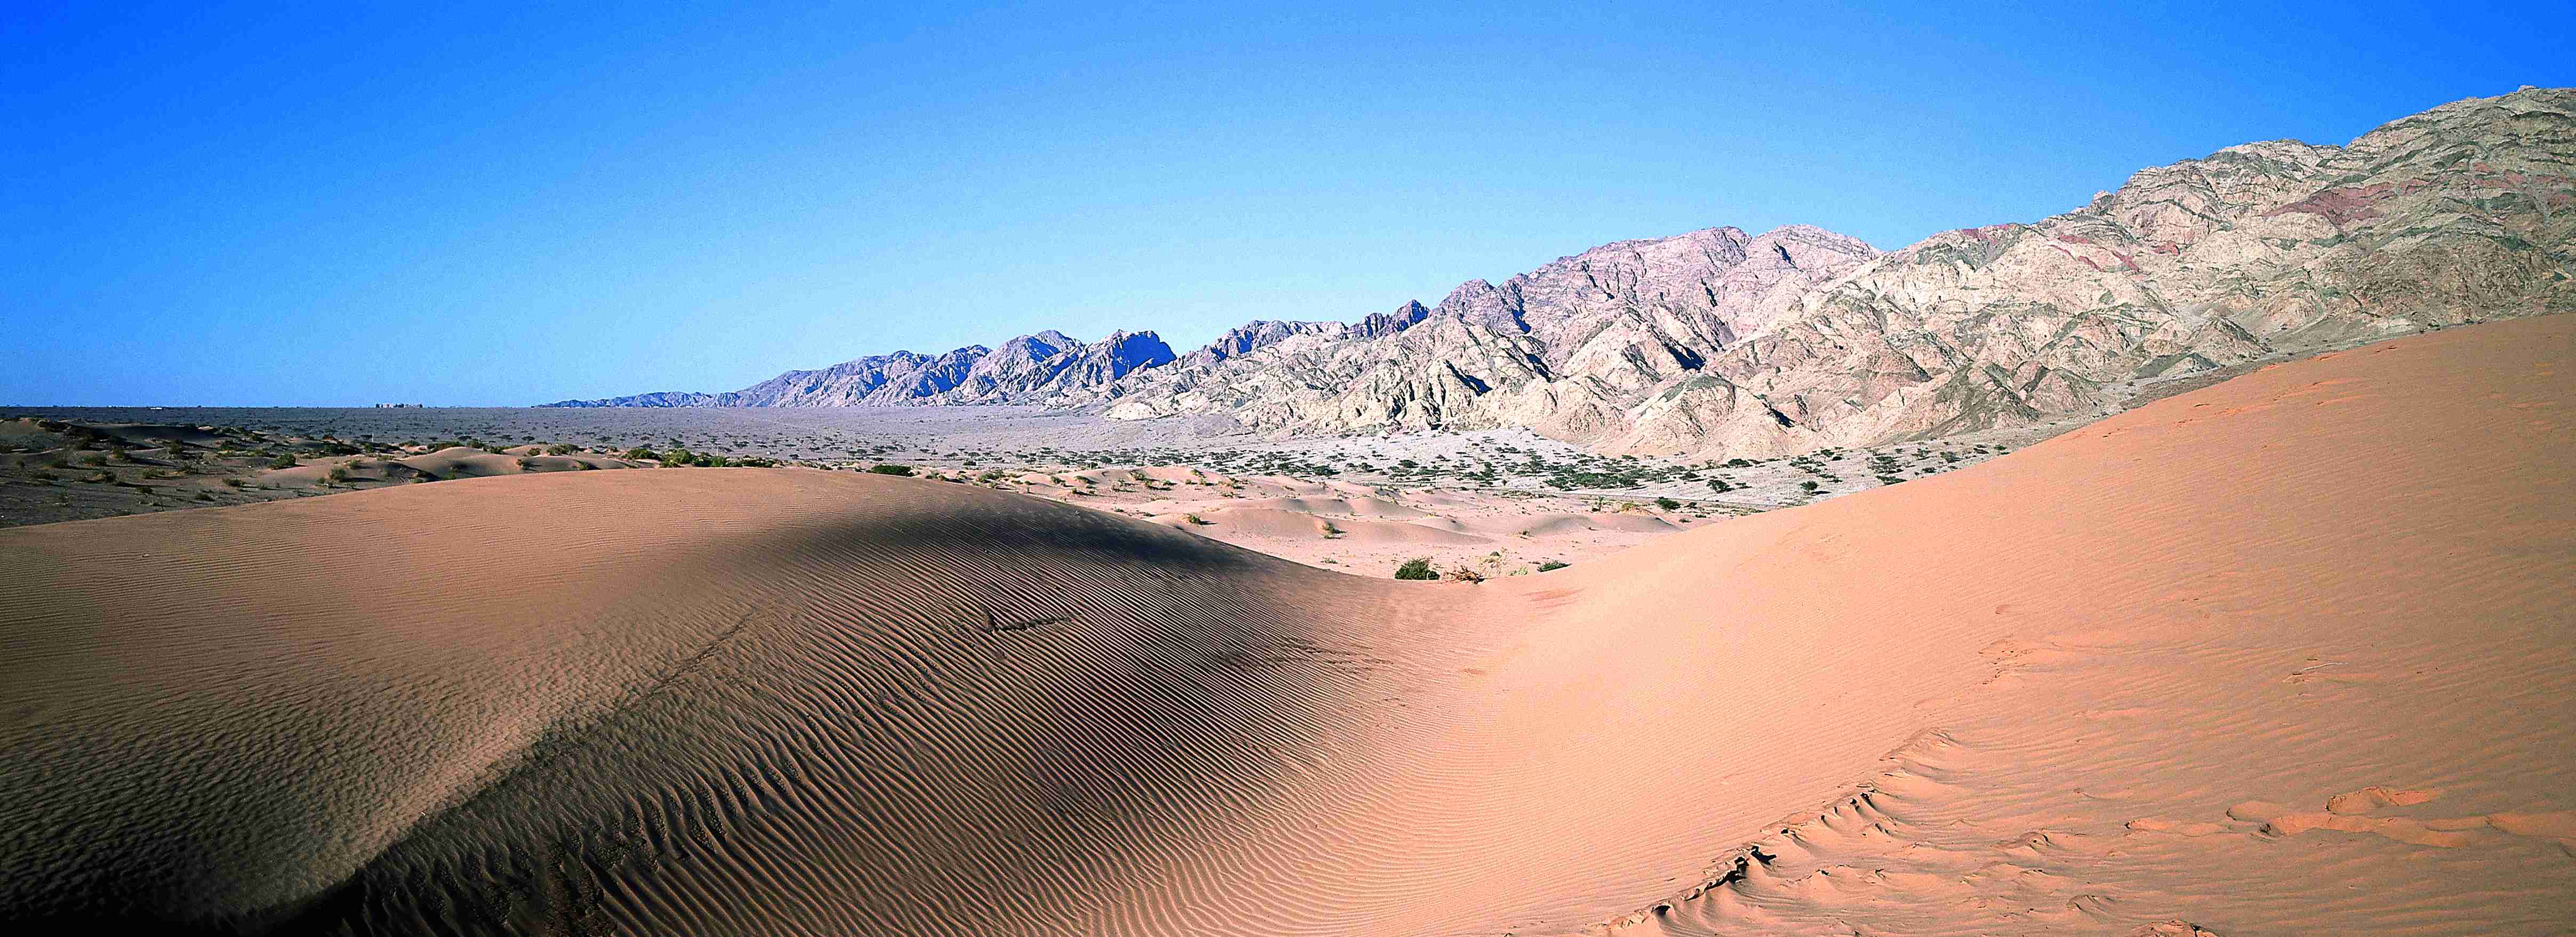 Plaines désertiques du Wadi Araba.